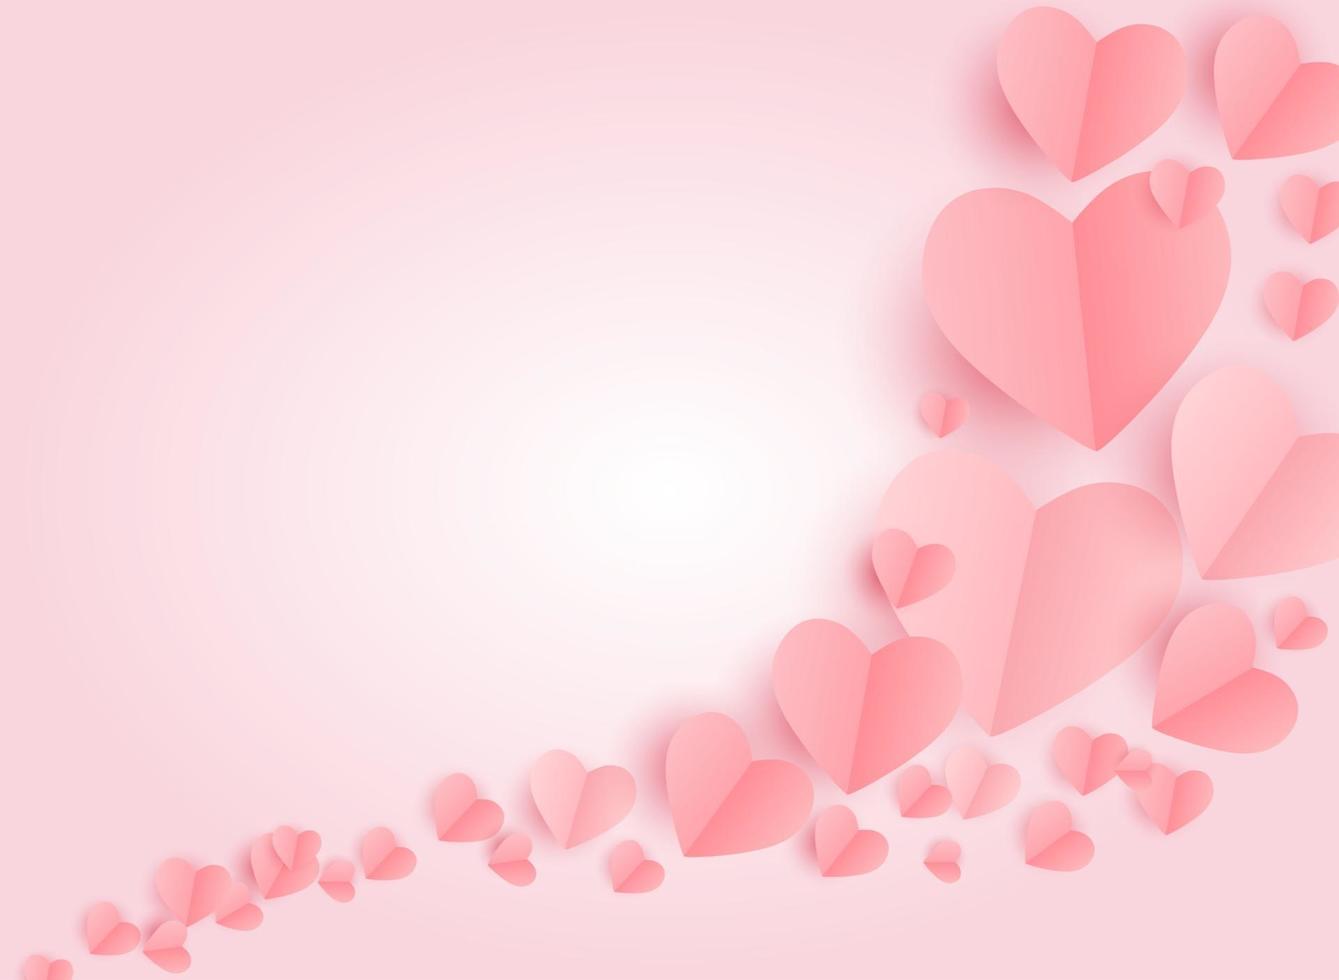 Alla hjärtans dag hjärtsymbol, kärlek och känslor bakgrundsdesign vektor